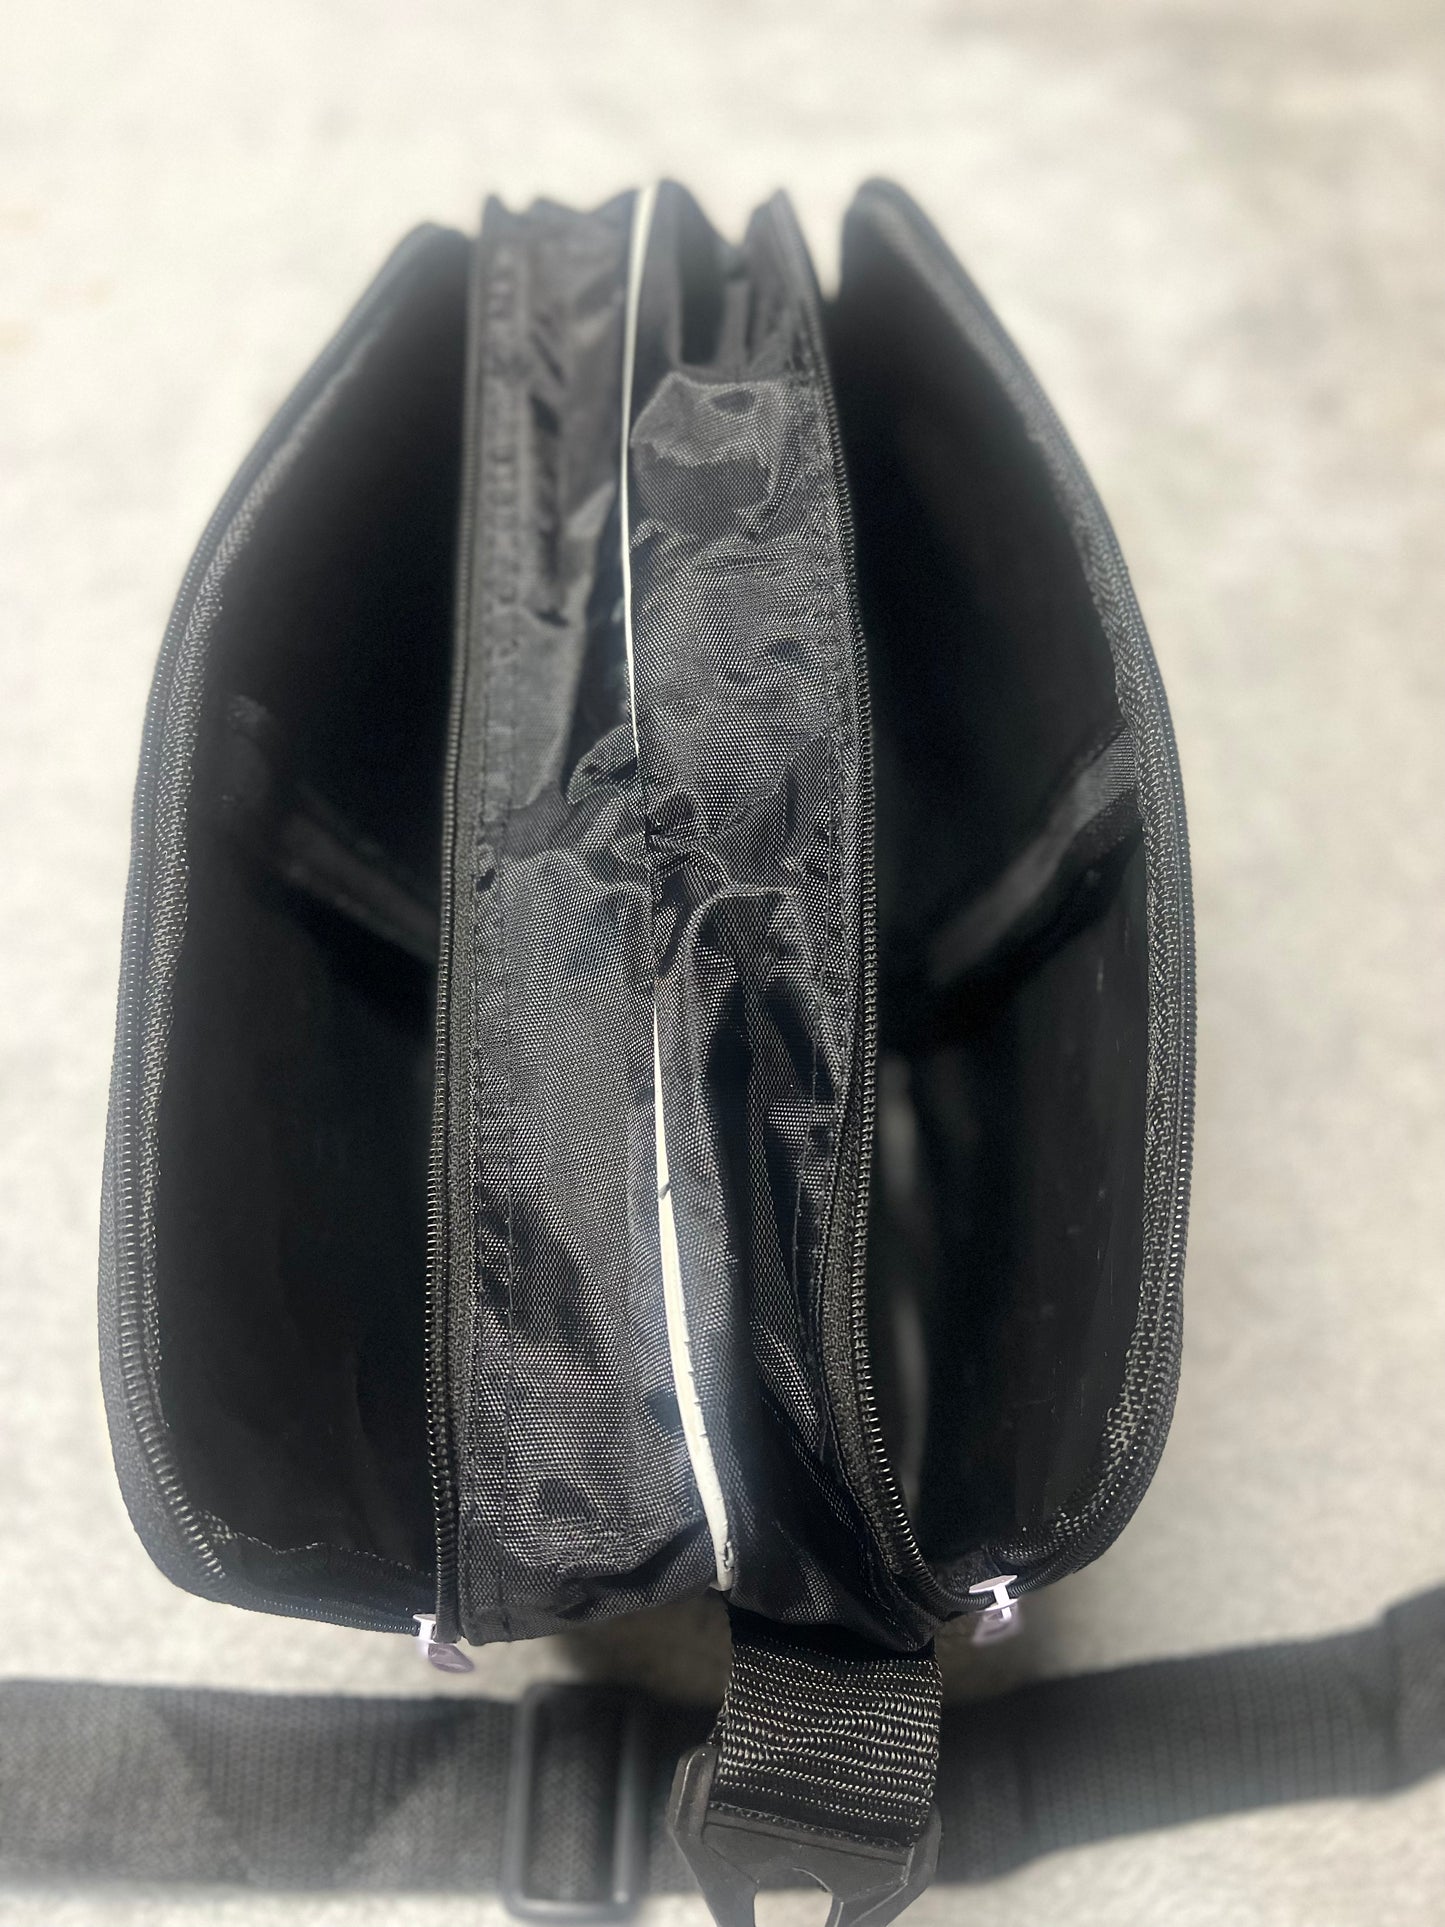 GK Glove Company Shield- Glove Bag